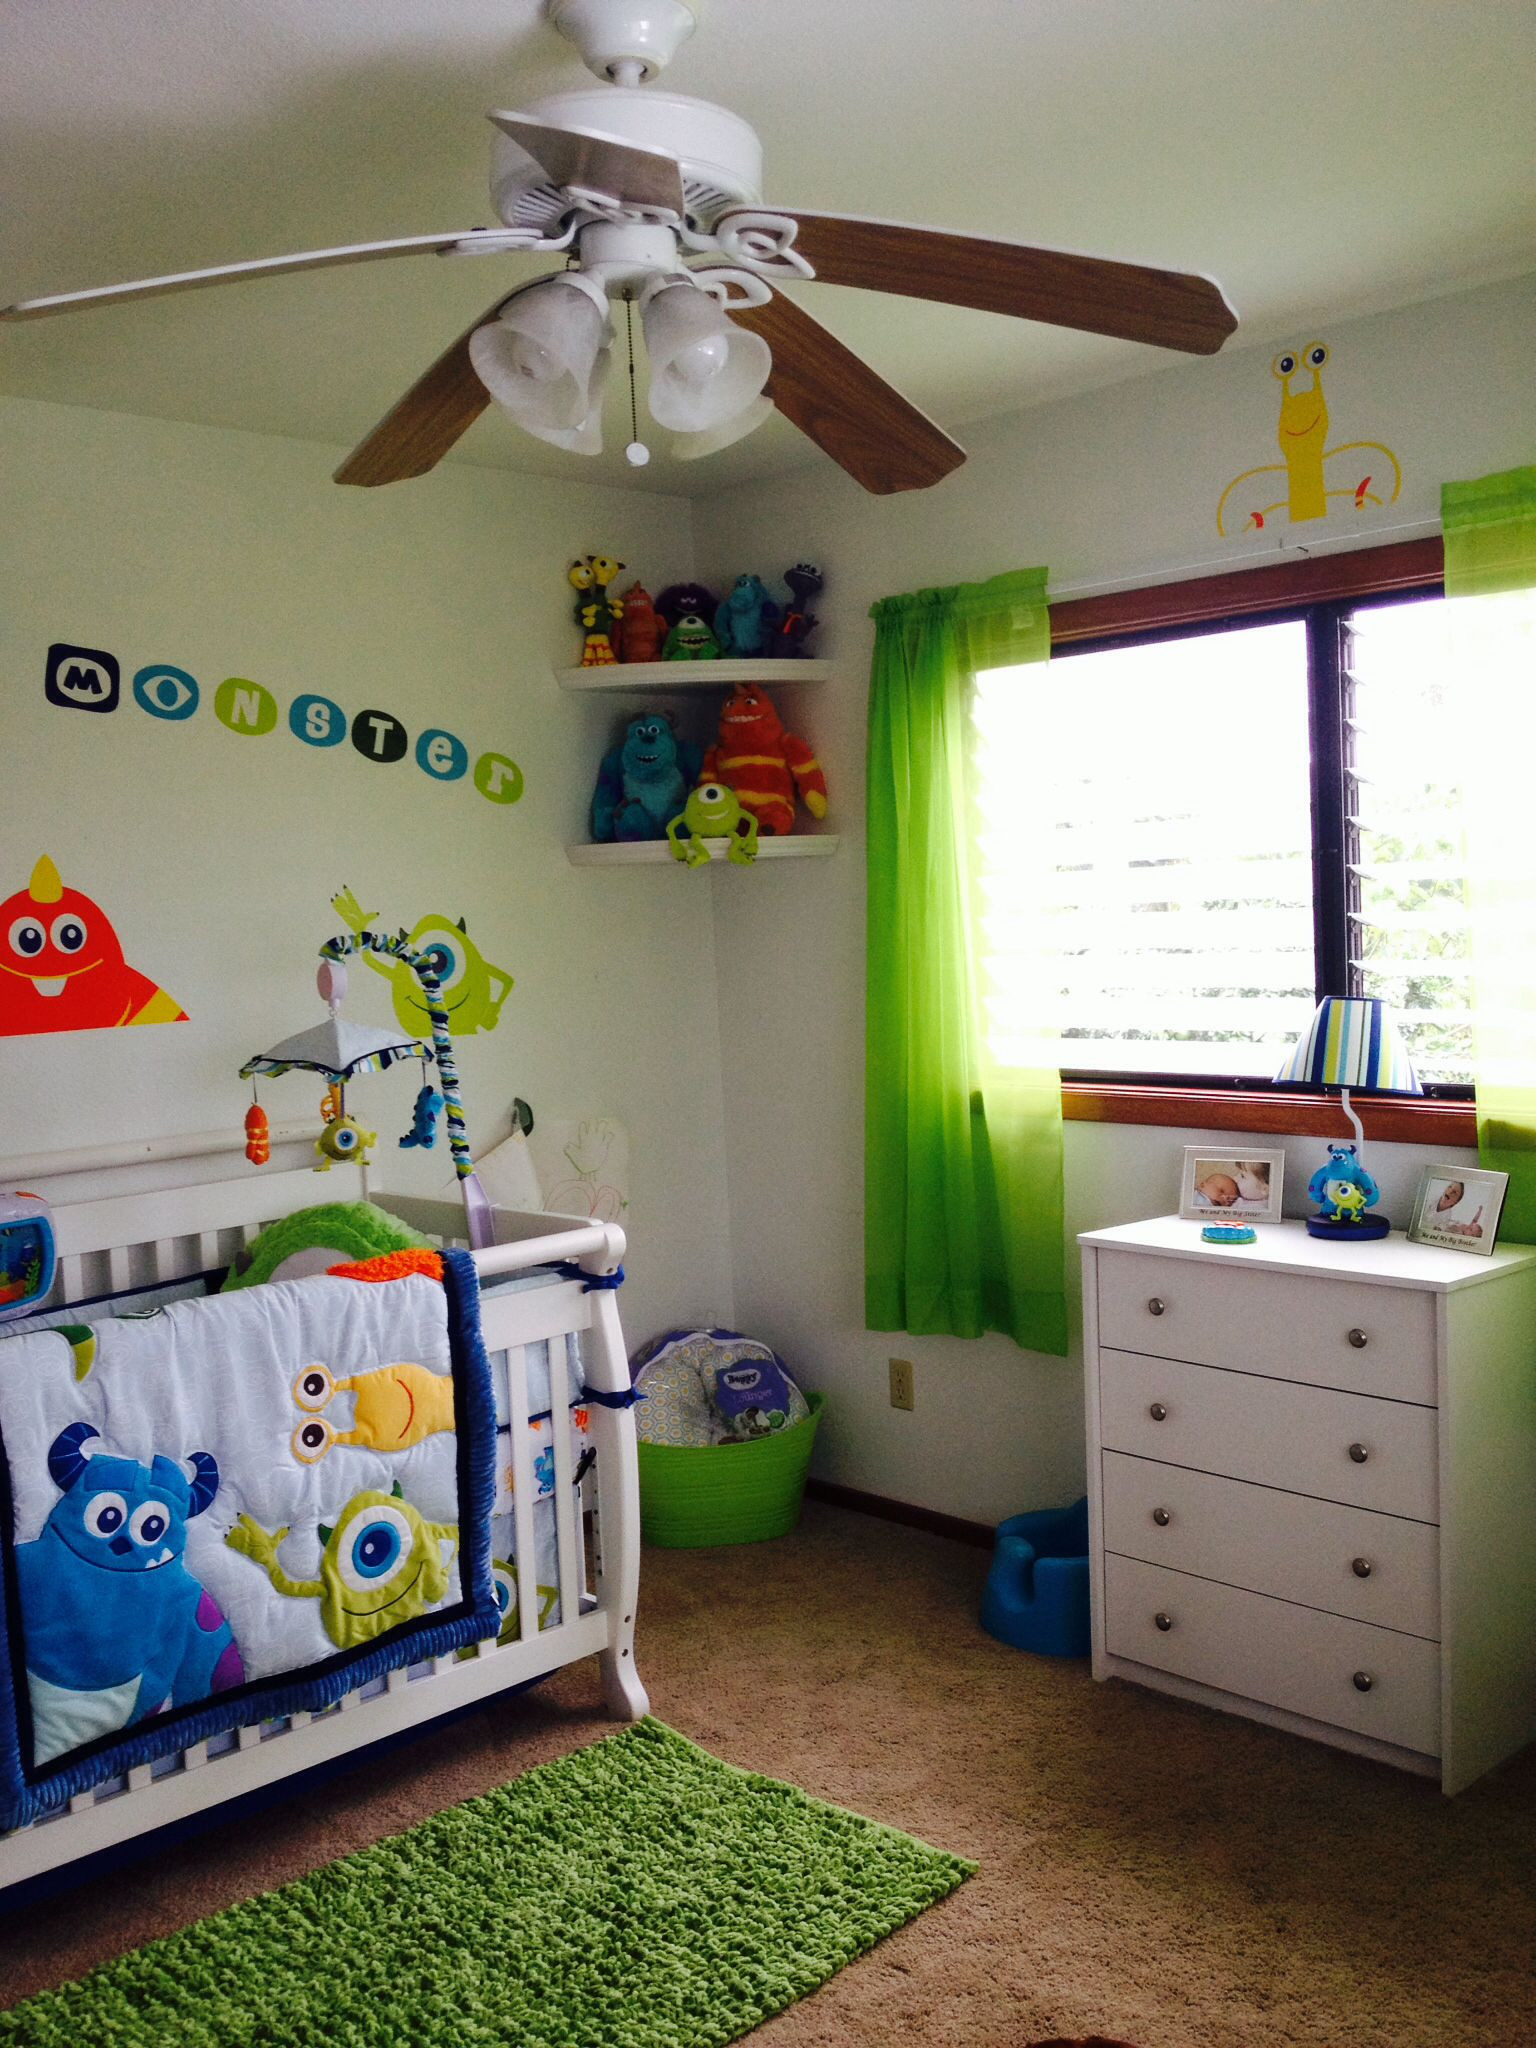 Monsters Inc Baby Decor
 Monsters Inc Baby Baby Room Ideas